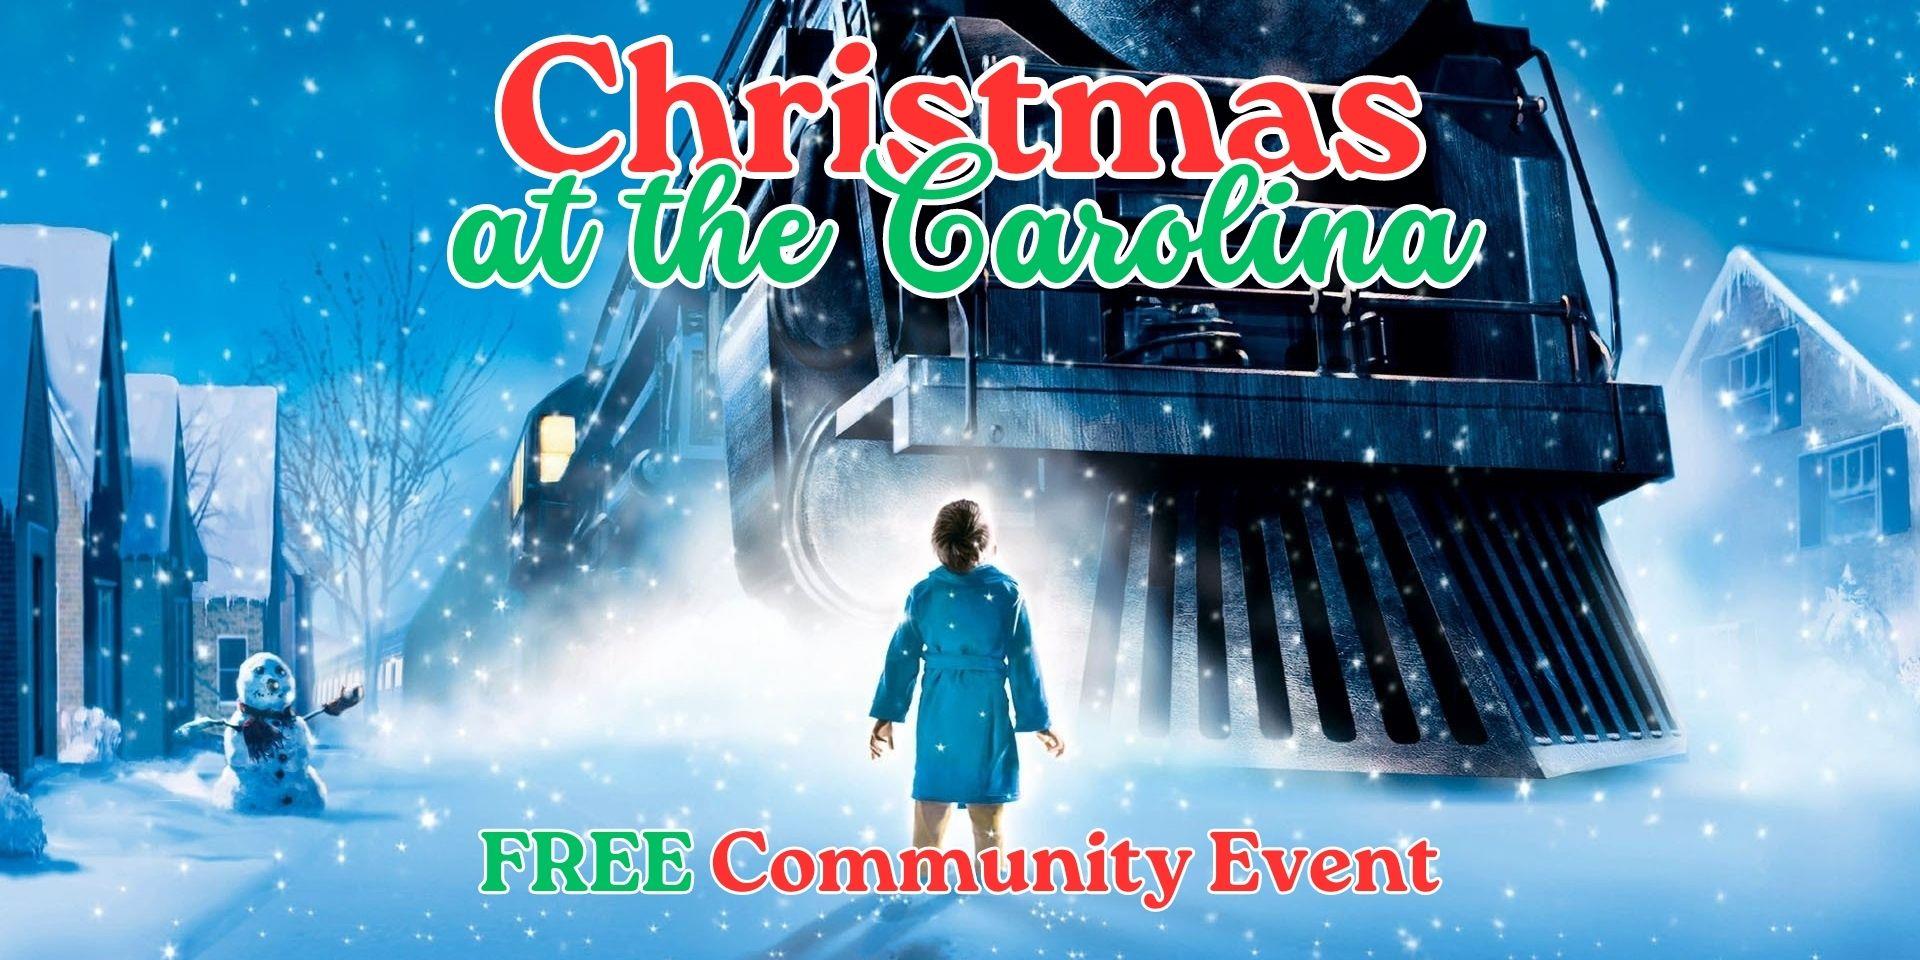 Polar Express - Christmas at the Carolina